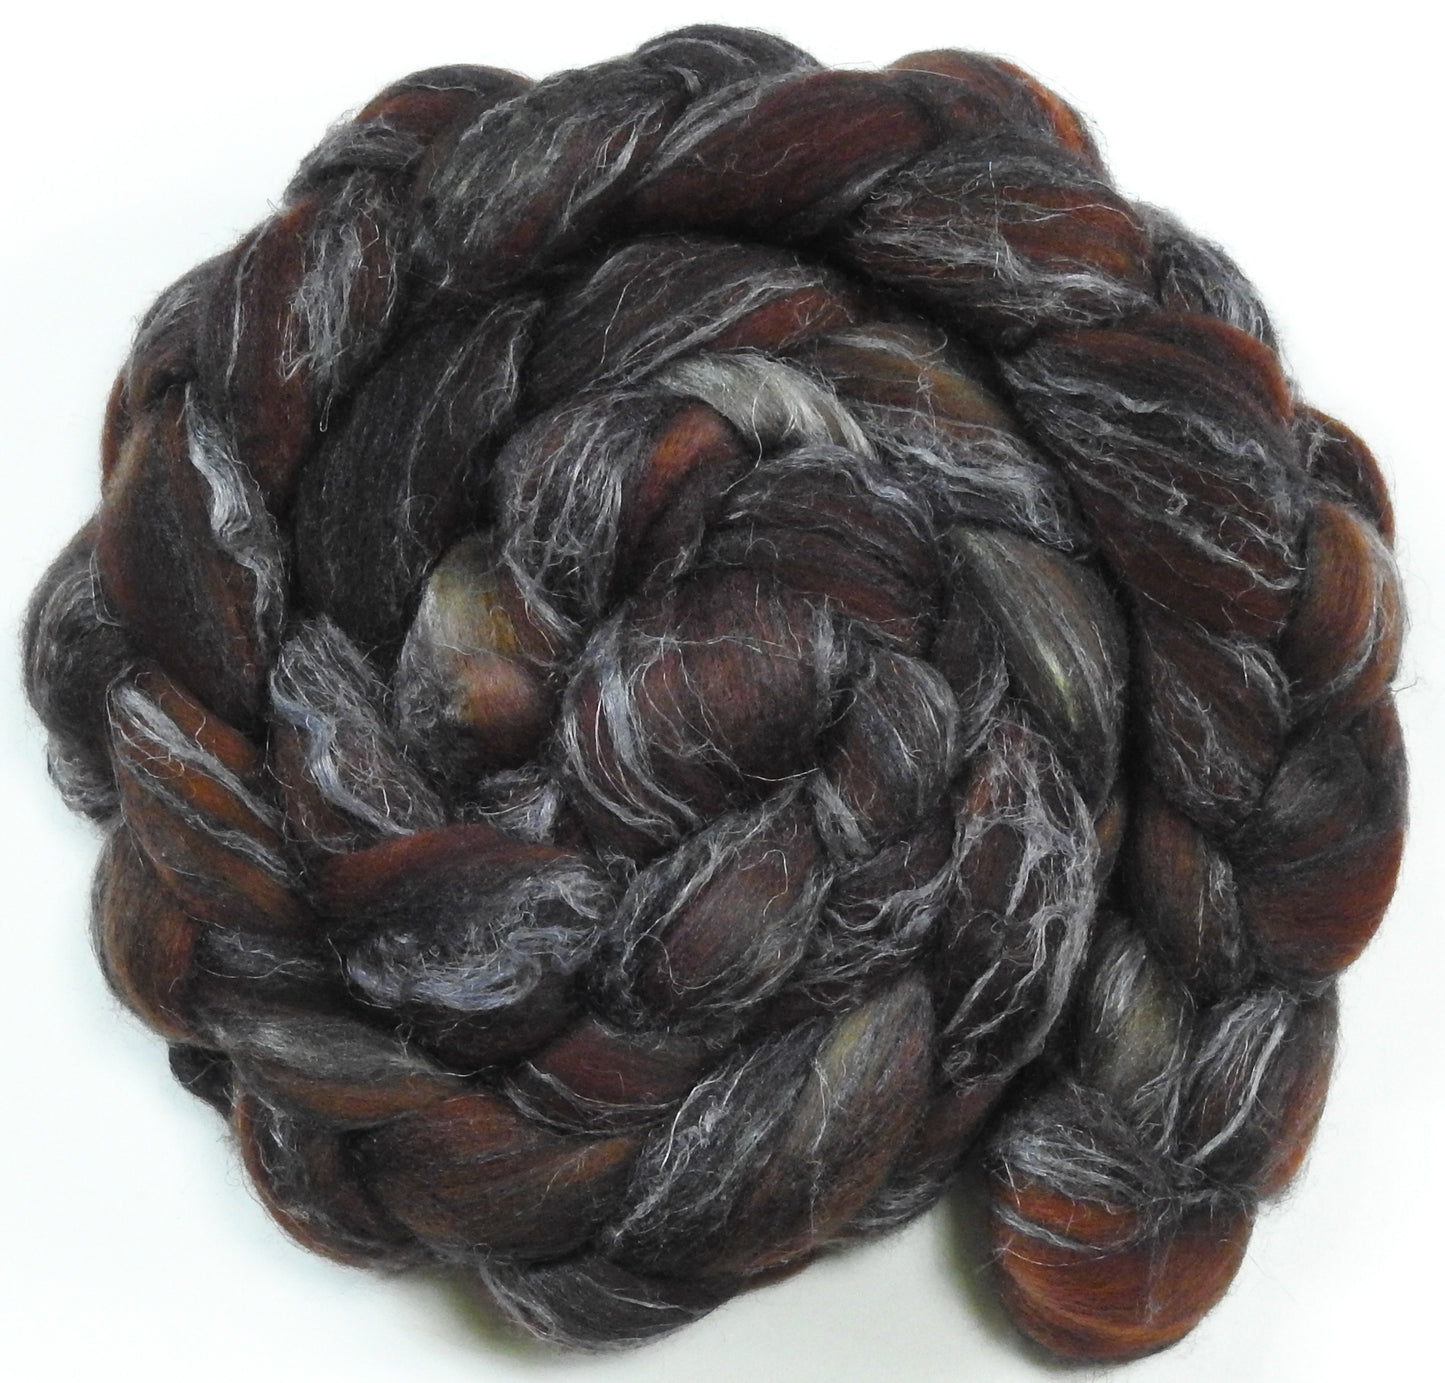 Dark Chocolate - Merino/ Tussah Silk/ Natural Flax (50/25/25) - 6.1 oz.